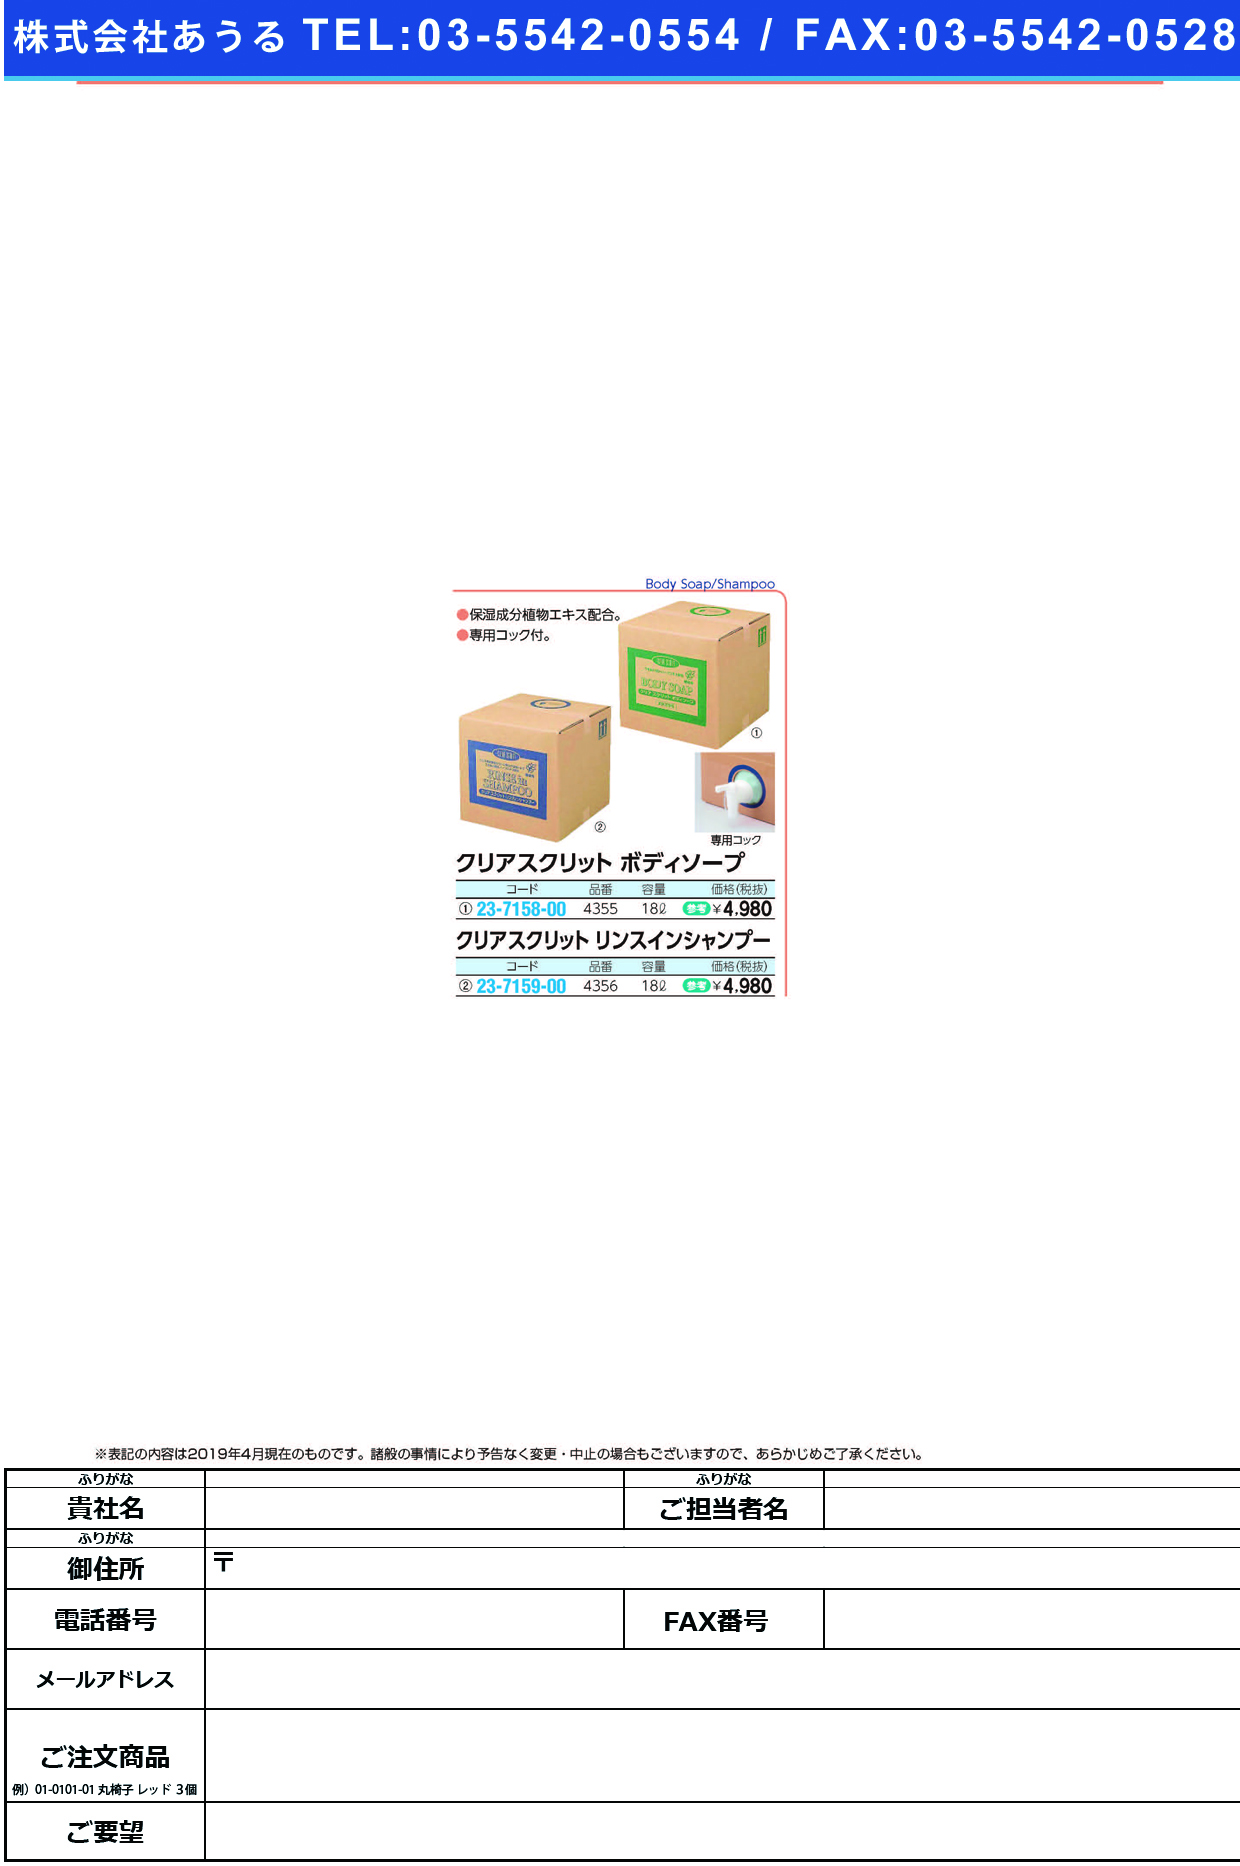 (23-7159-00)クリアスクリットリンスインシャンプー 4356(18L) ｸﾘｱｽｸﾘｯﾄﾘﾝｽｲﾝｼｬﾝﾌﾟｰ【1箱単位】【2019年カタログ商品】